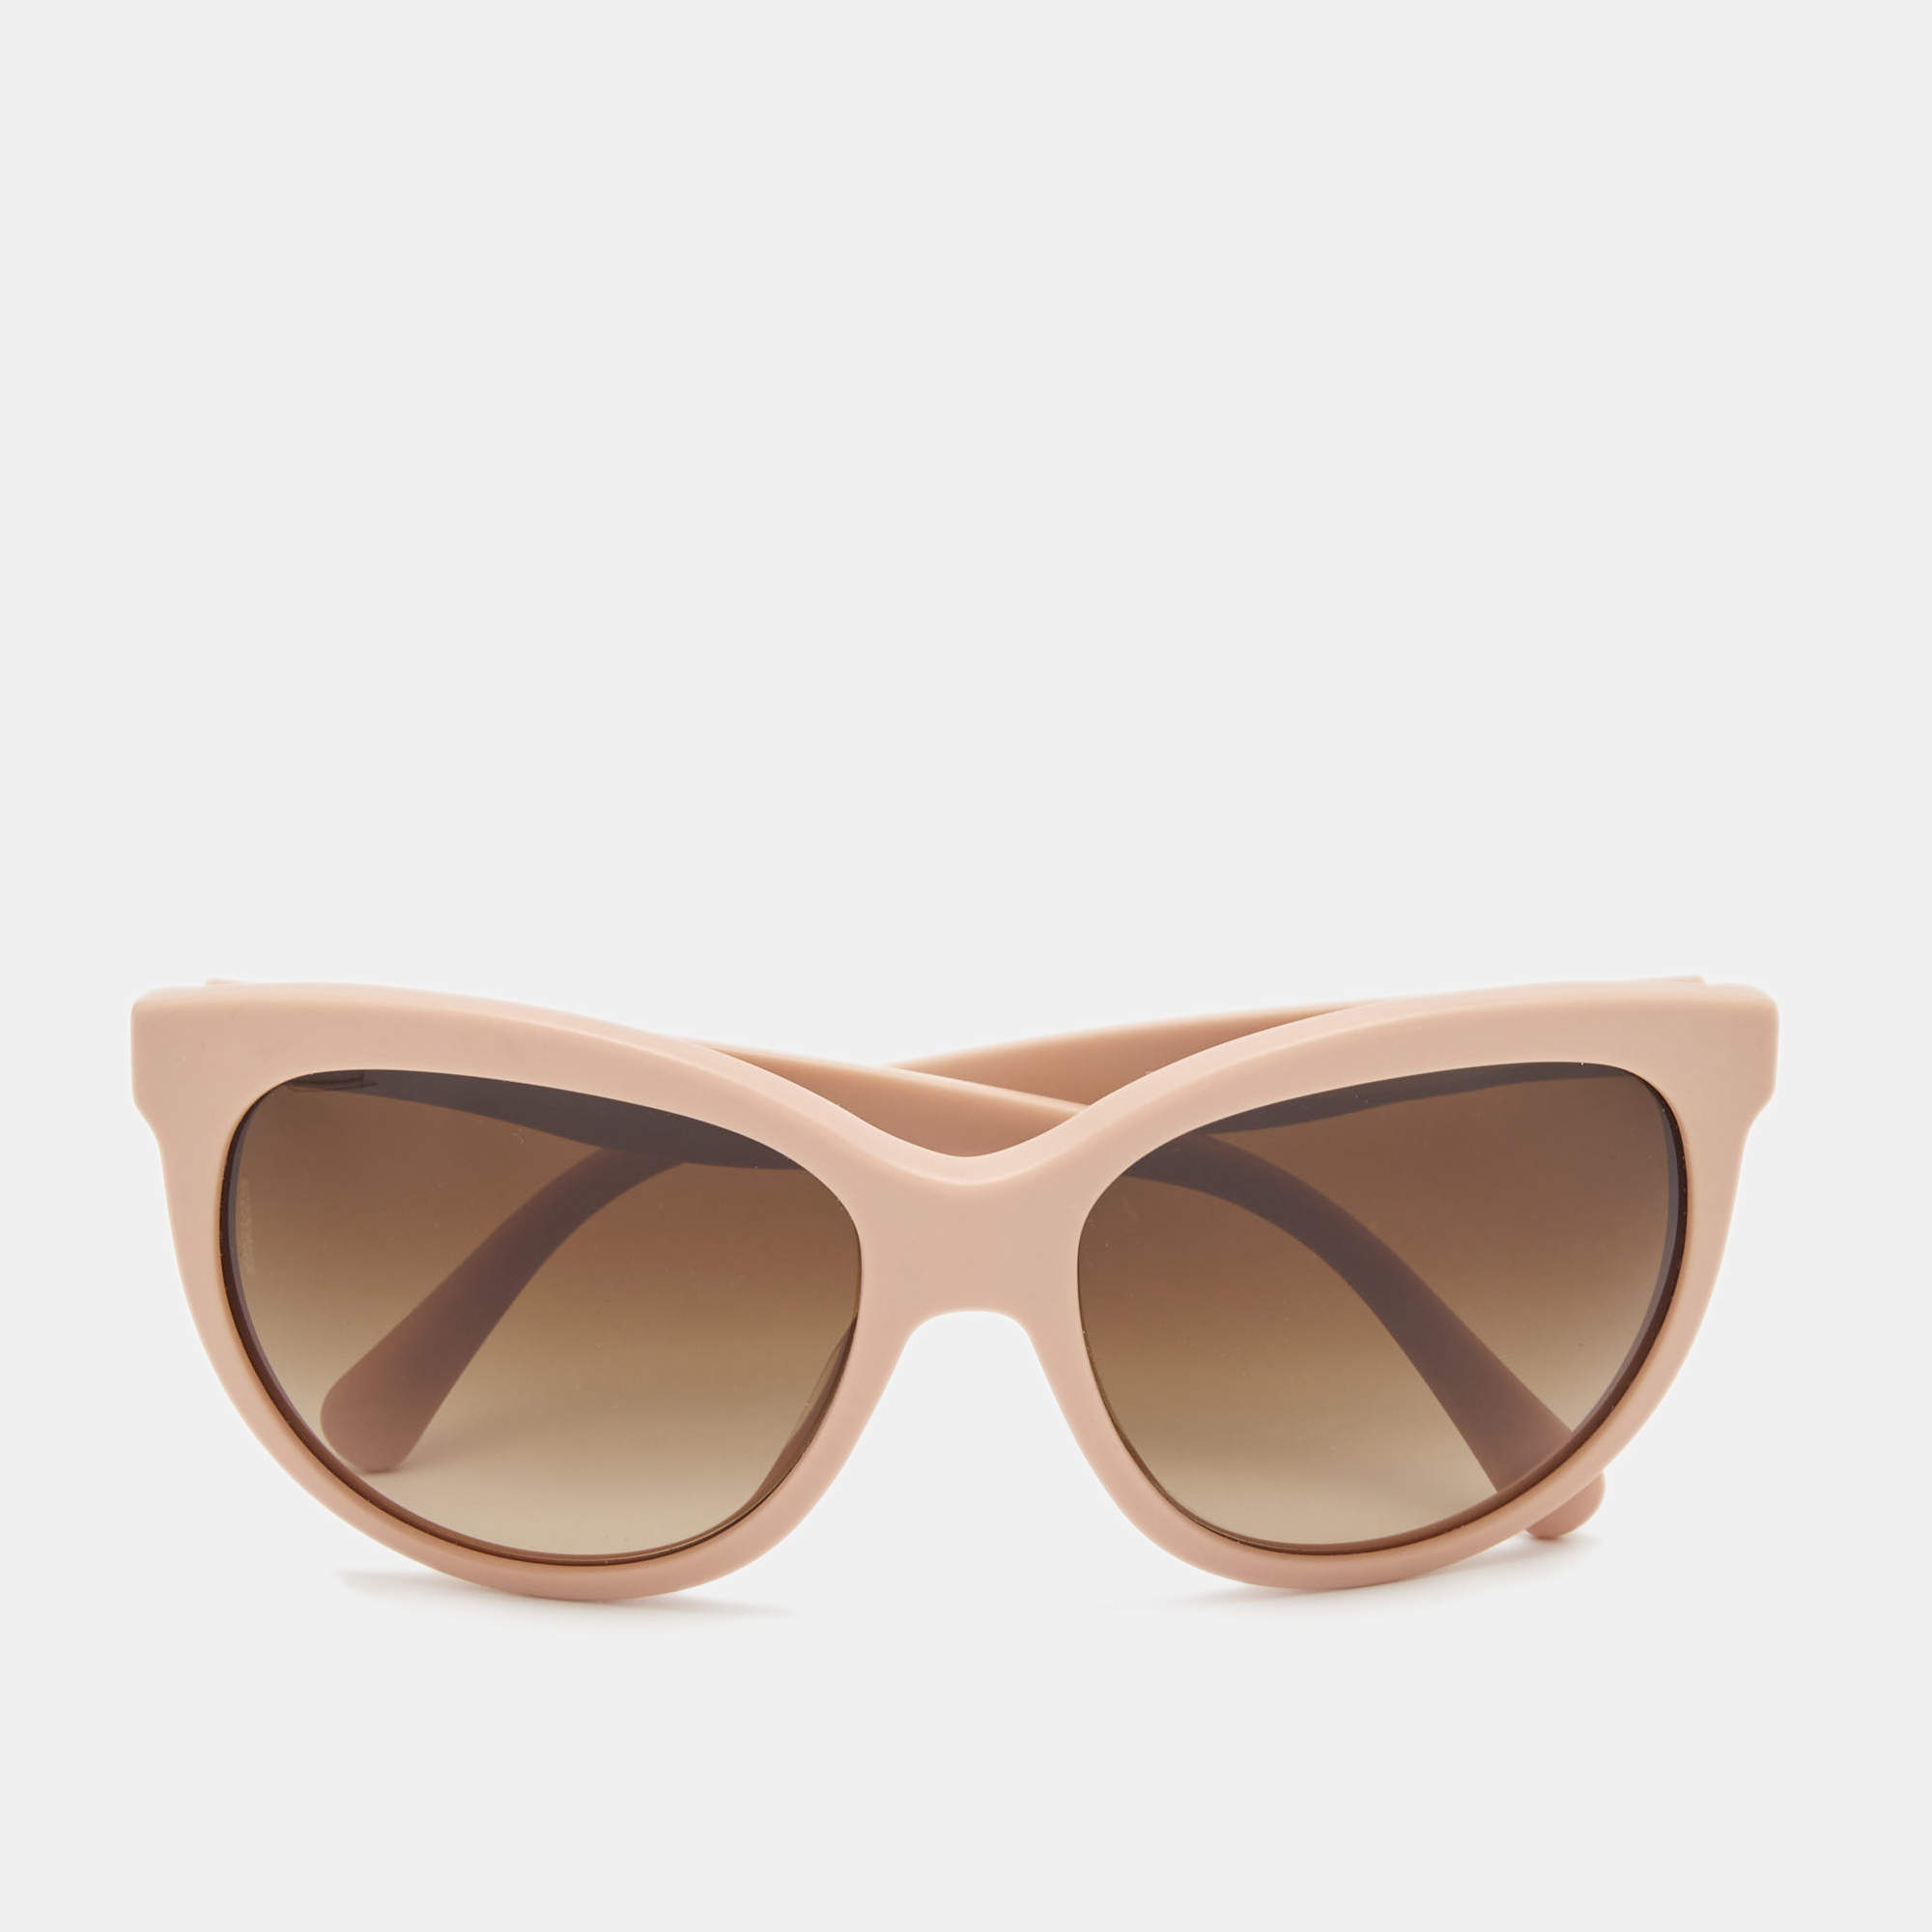 DOlce & Gabbana sunglasses